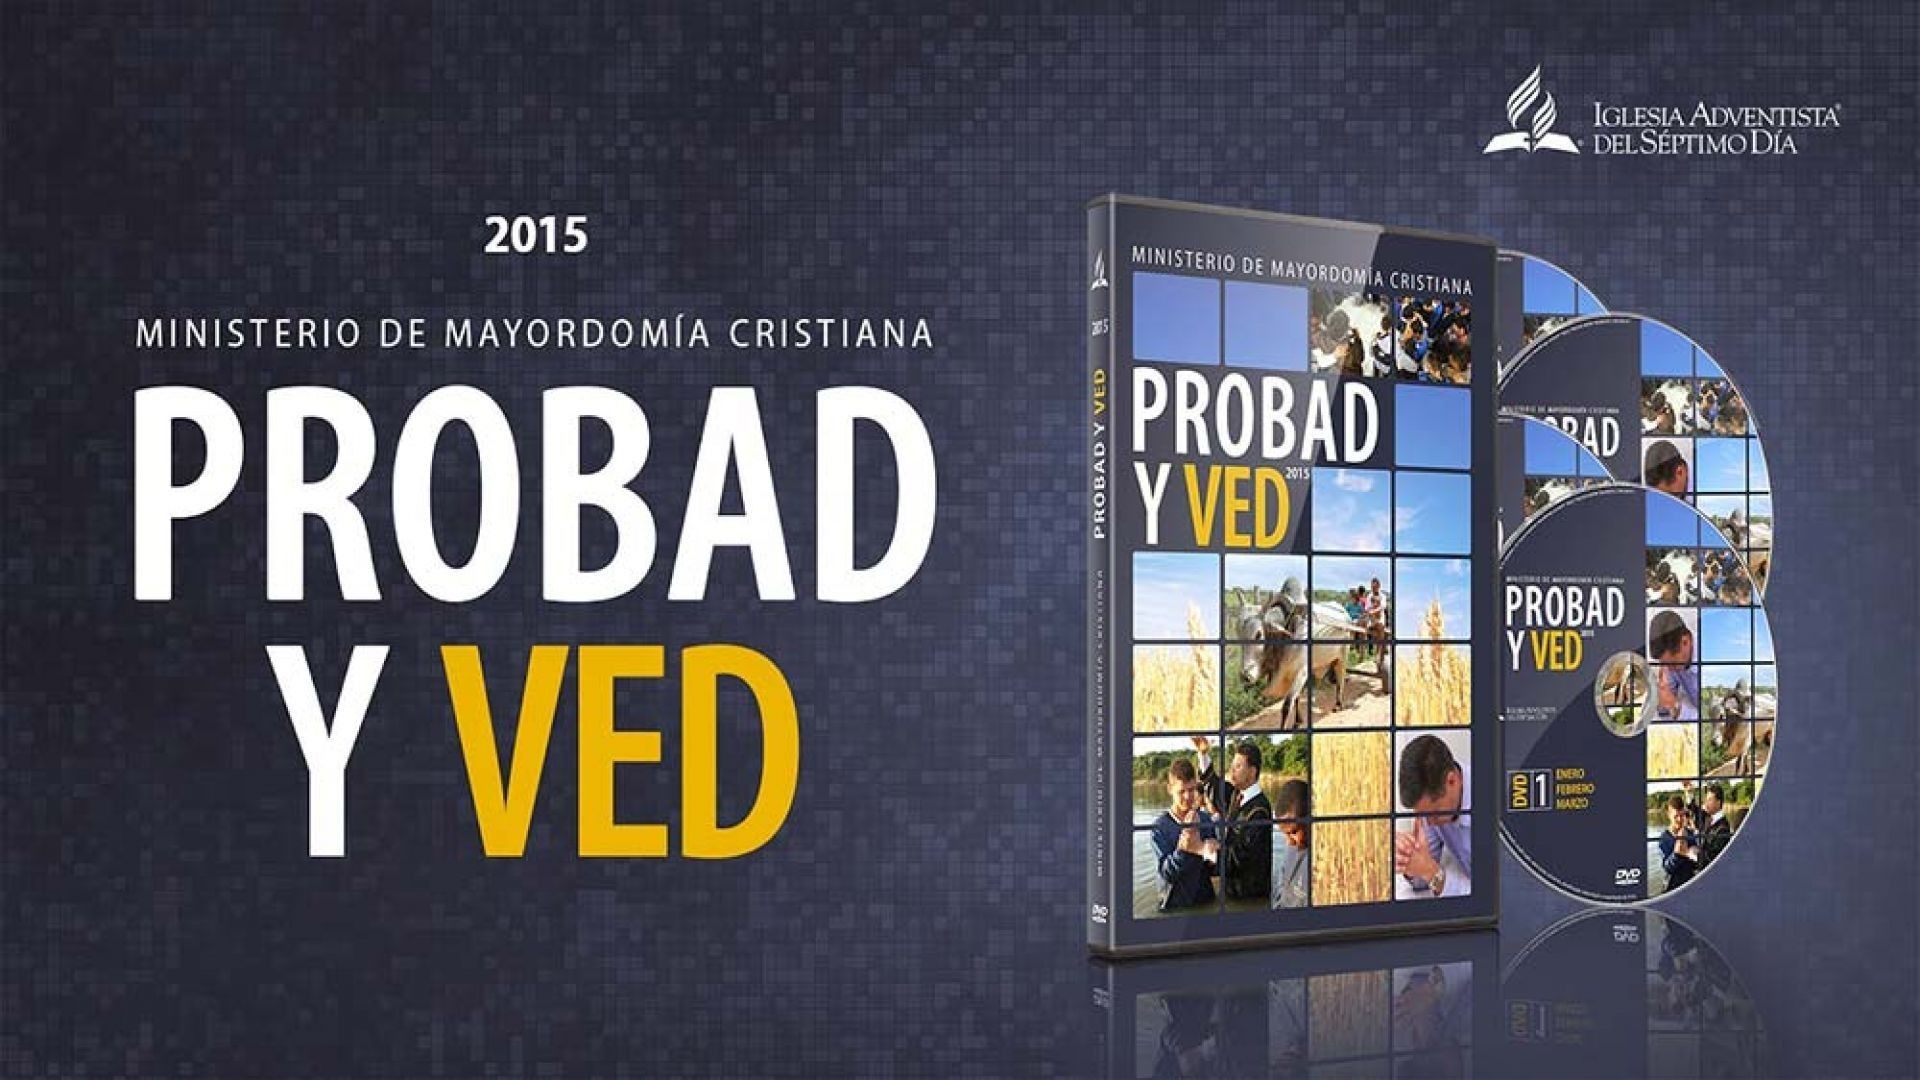 18/Abr. Virtuoso en la fe - Probad y Ved | Iglesia Adventista